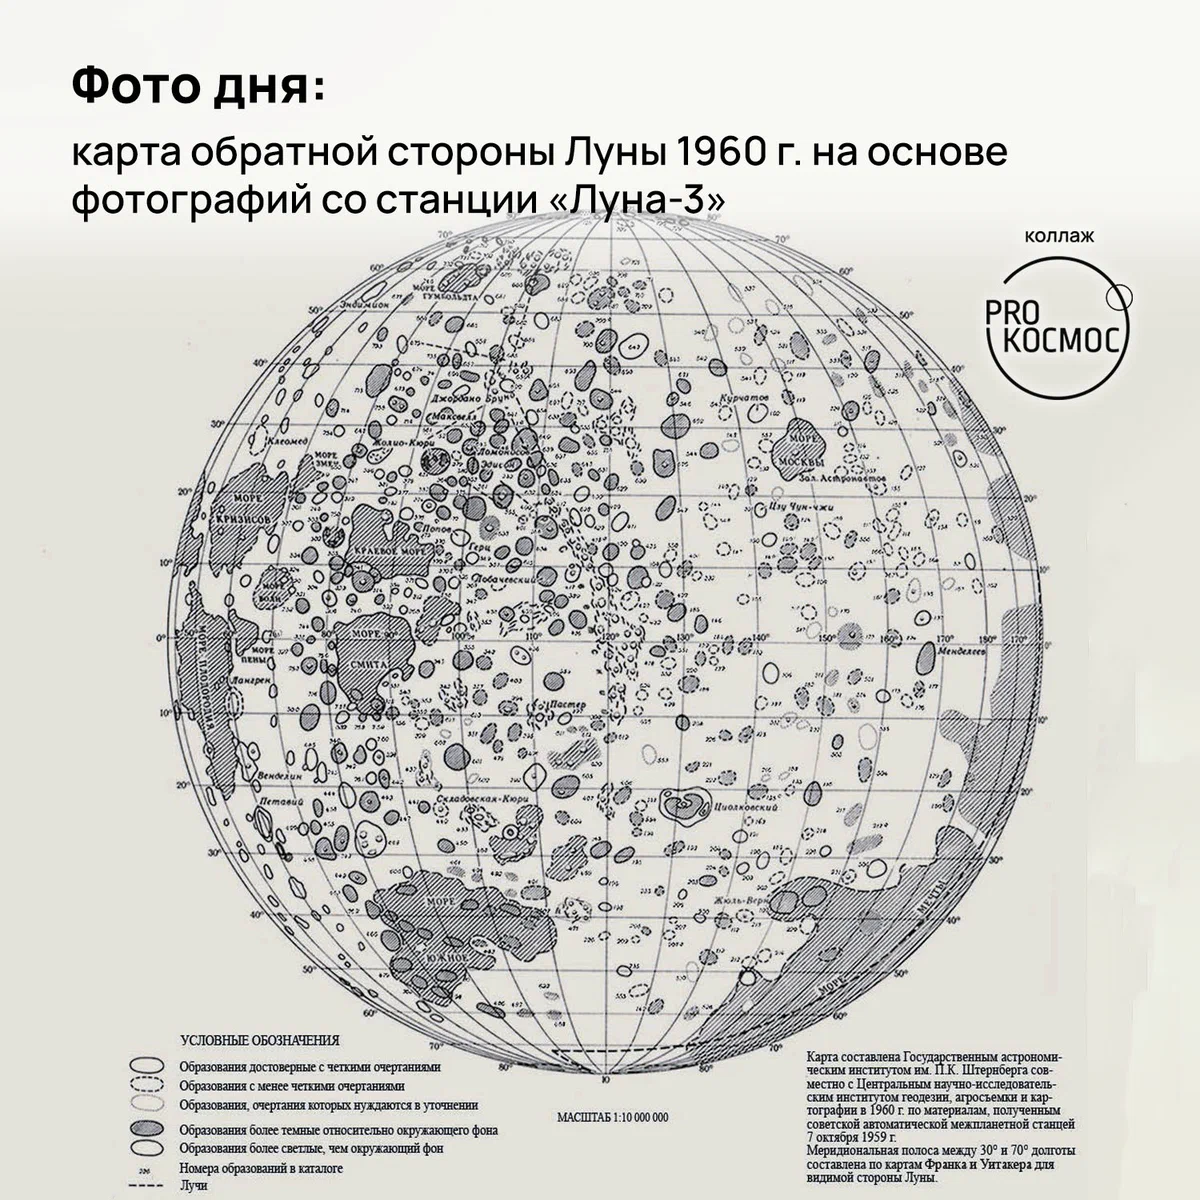 Фото дня: карта обратной стороны Луны 1960 г. на основе фотографий со станции «Луна-3» height=1200px width=1200px